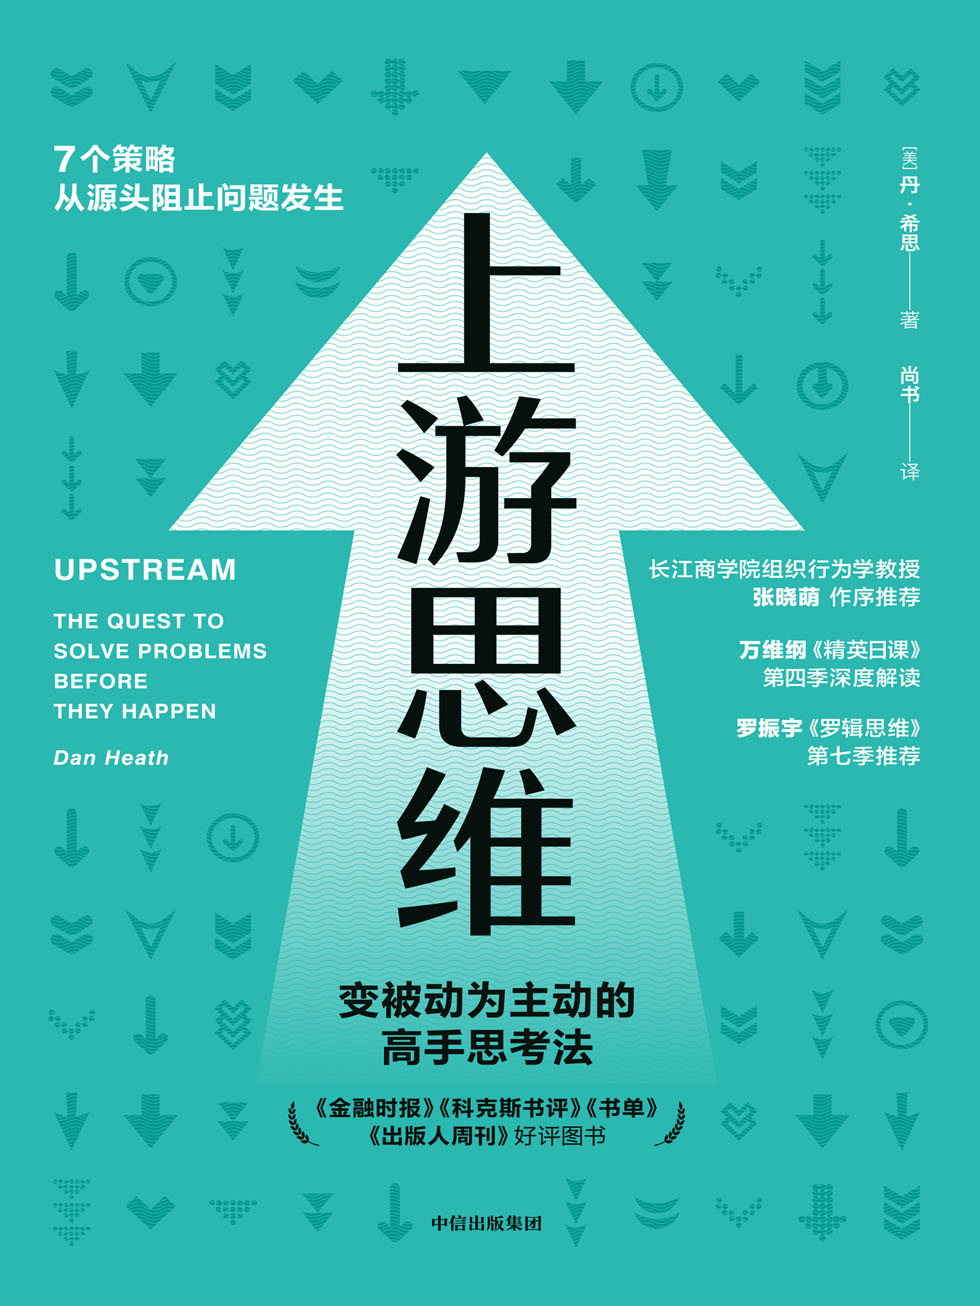 《上游思维》-azw3,mobi,epub,pdf,txt,kindle电子书免费下载